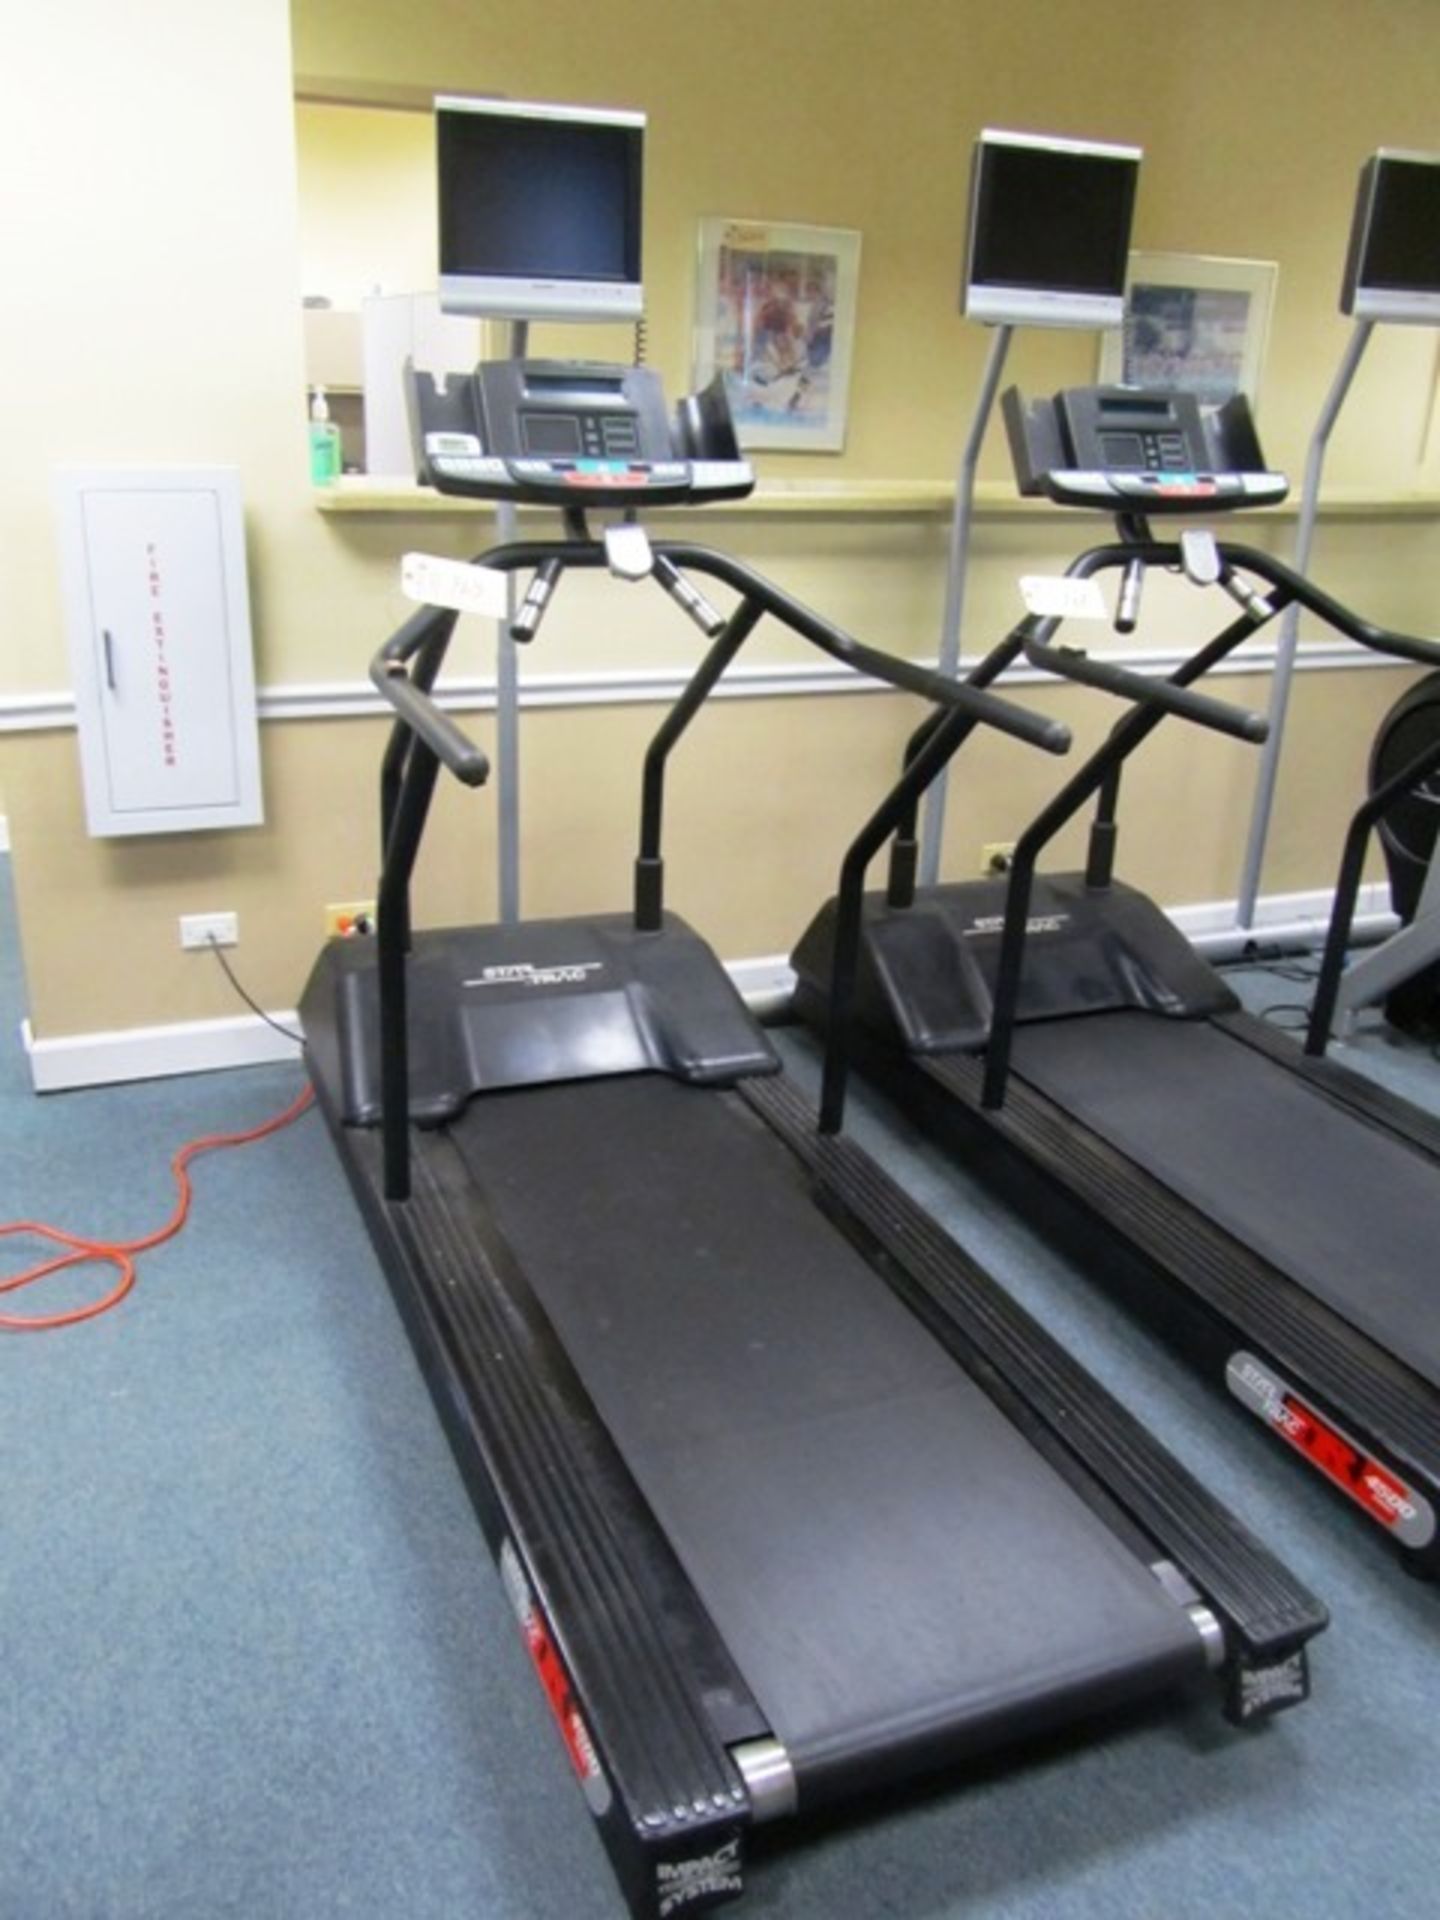 Star Trac 4500 Series Treadmill with Digital Readout, Sharp TV Screen*located Oak Lawn, IL